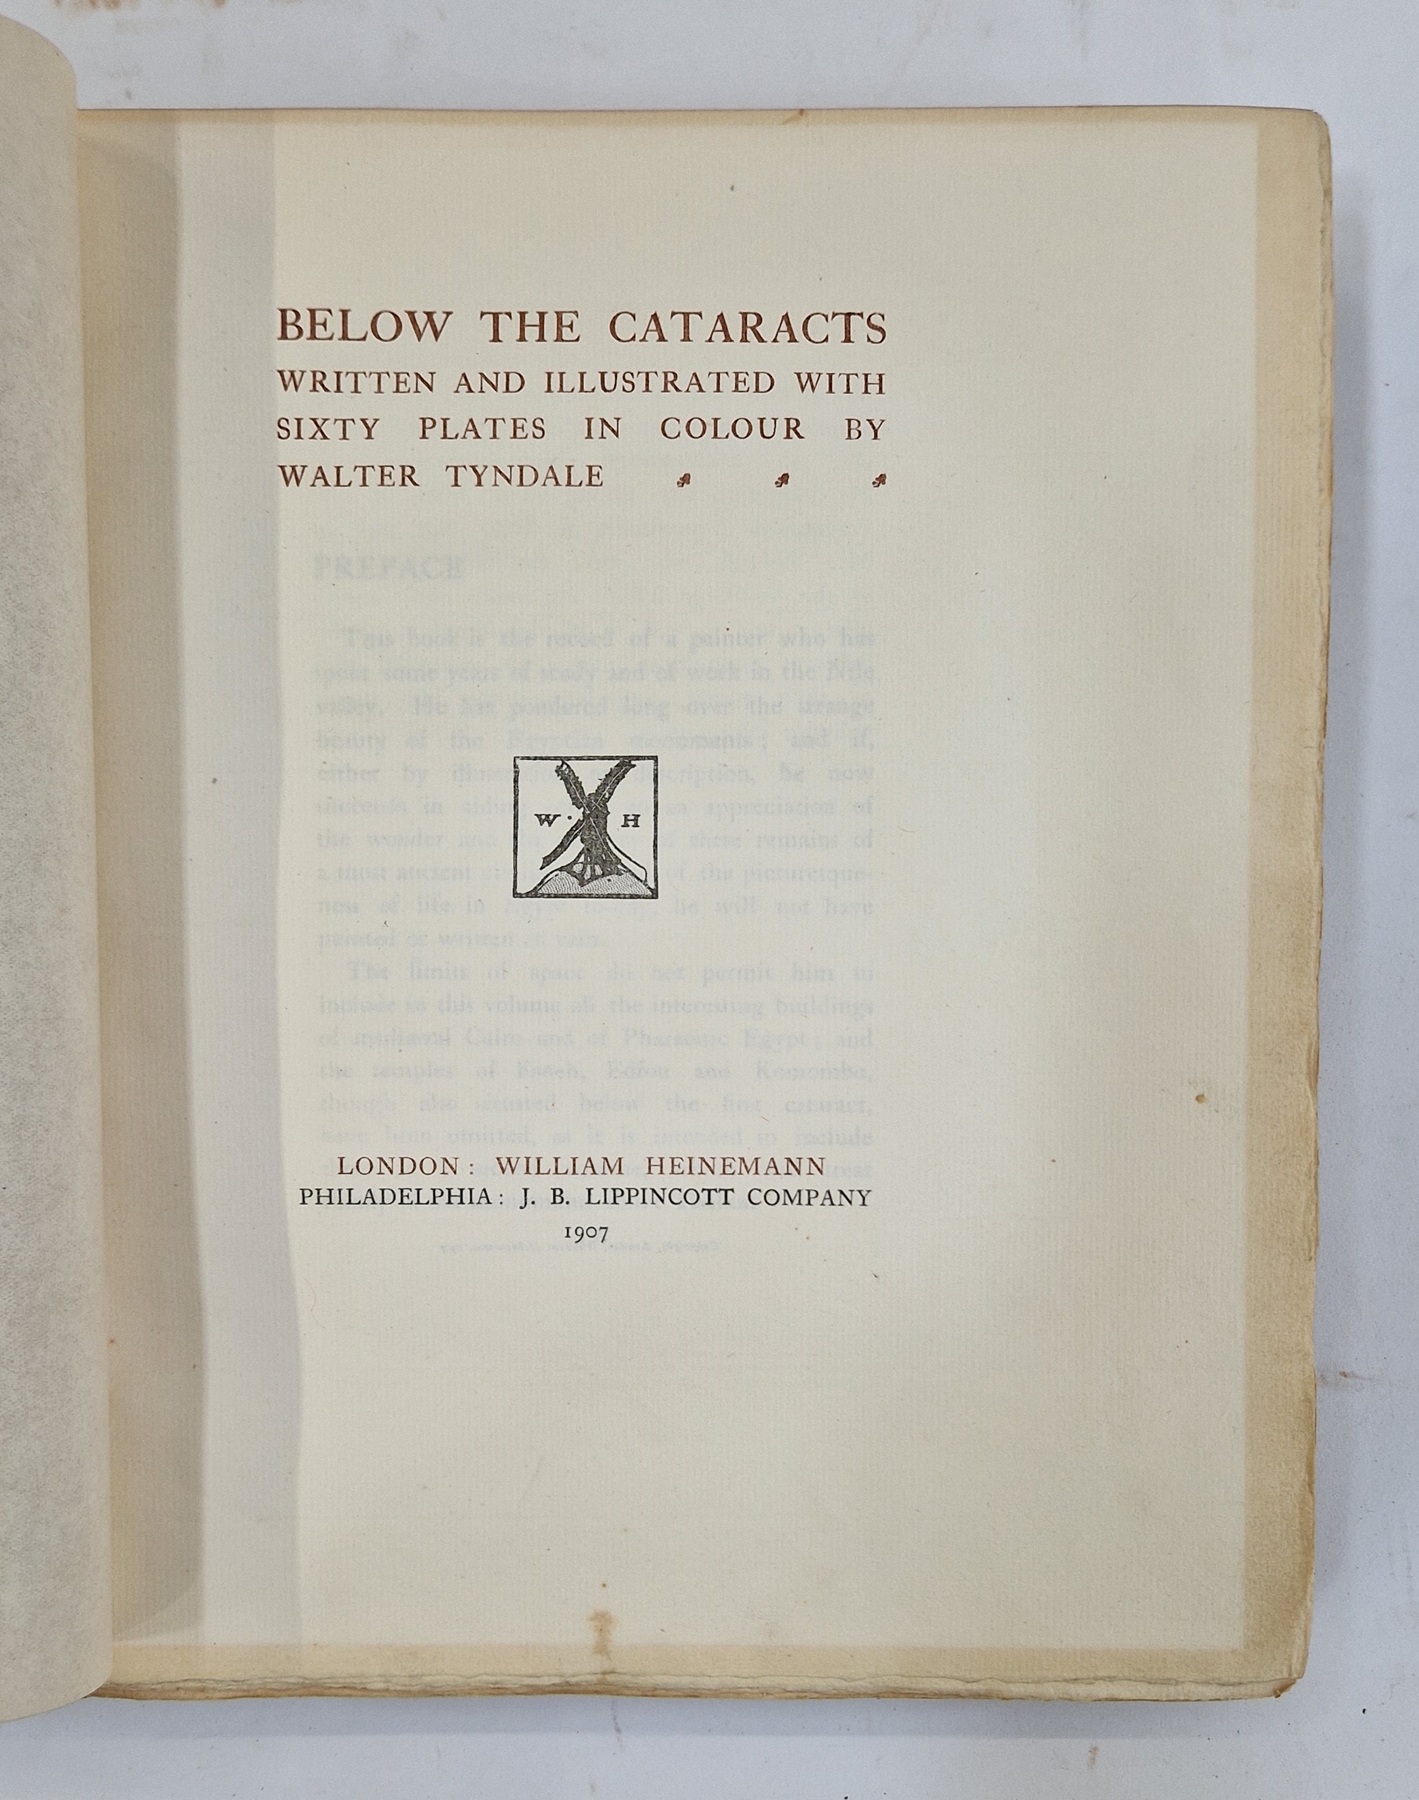 Tyndale, Walter "Below the Cataracts", William Heinemann and J B Lipincott 1907, no.39/150 copies - Image 4 of 4